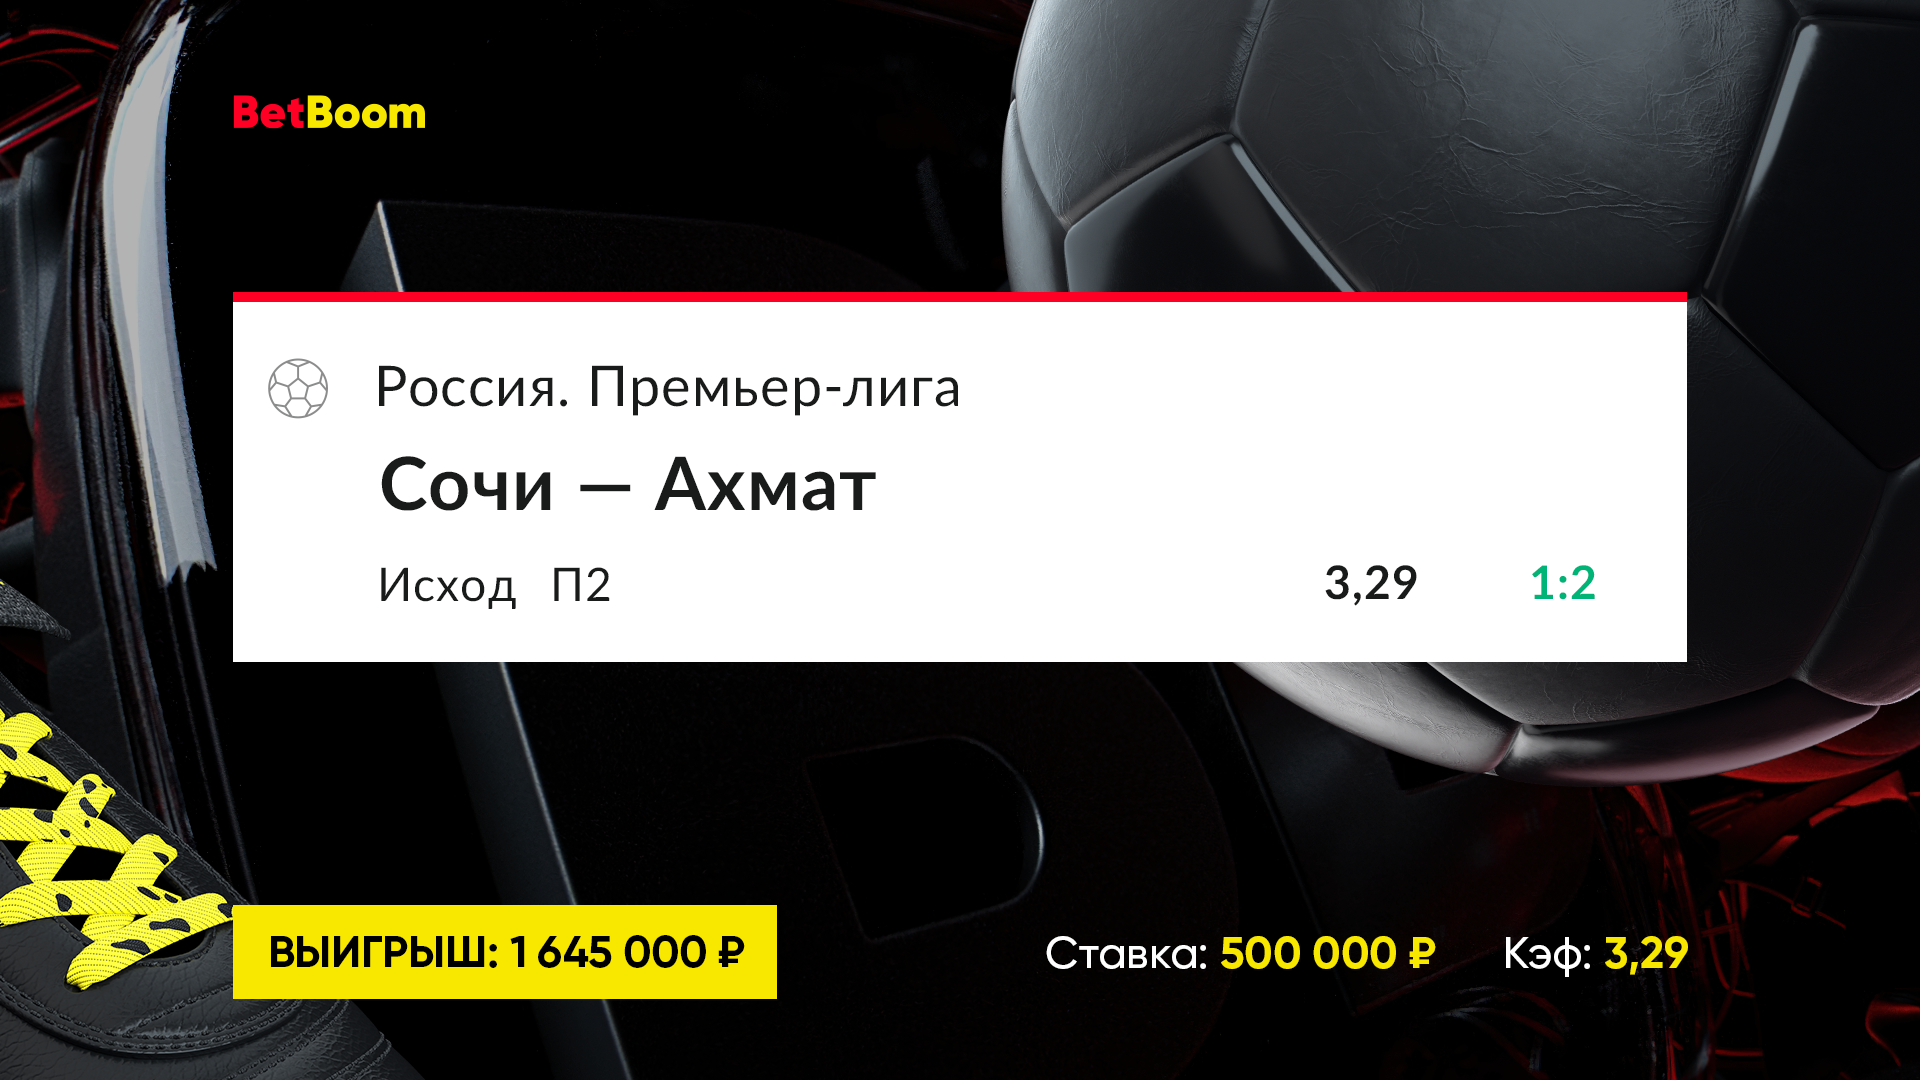 Клиент BetBoom поставил на команду без побед в чемпионате и выиграл 1 645 000 рублей